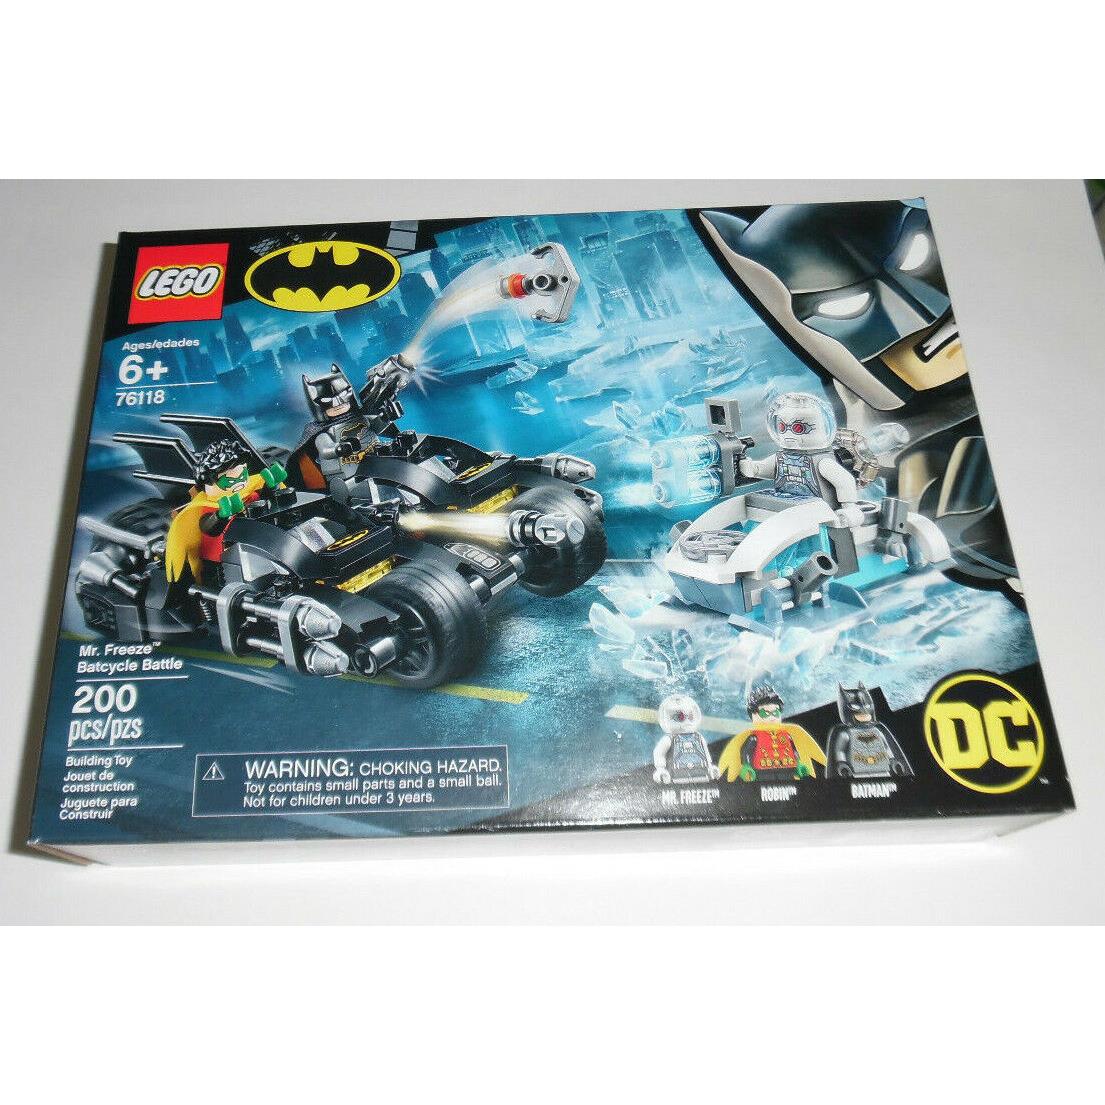 Lego DC Batman Mr. Freeze Batcycle Battle 76118 200 Piece Building Toy Set Kit